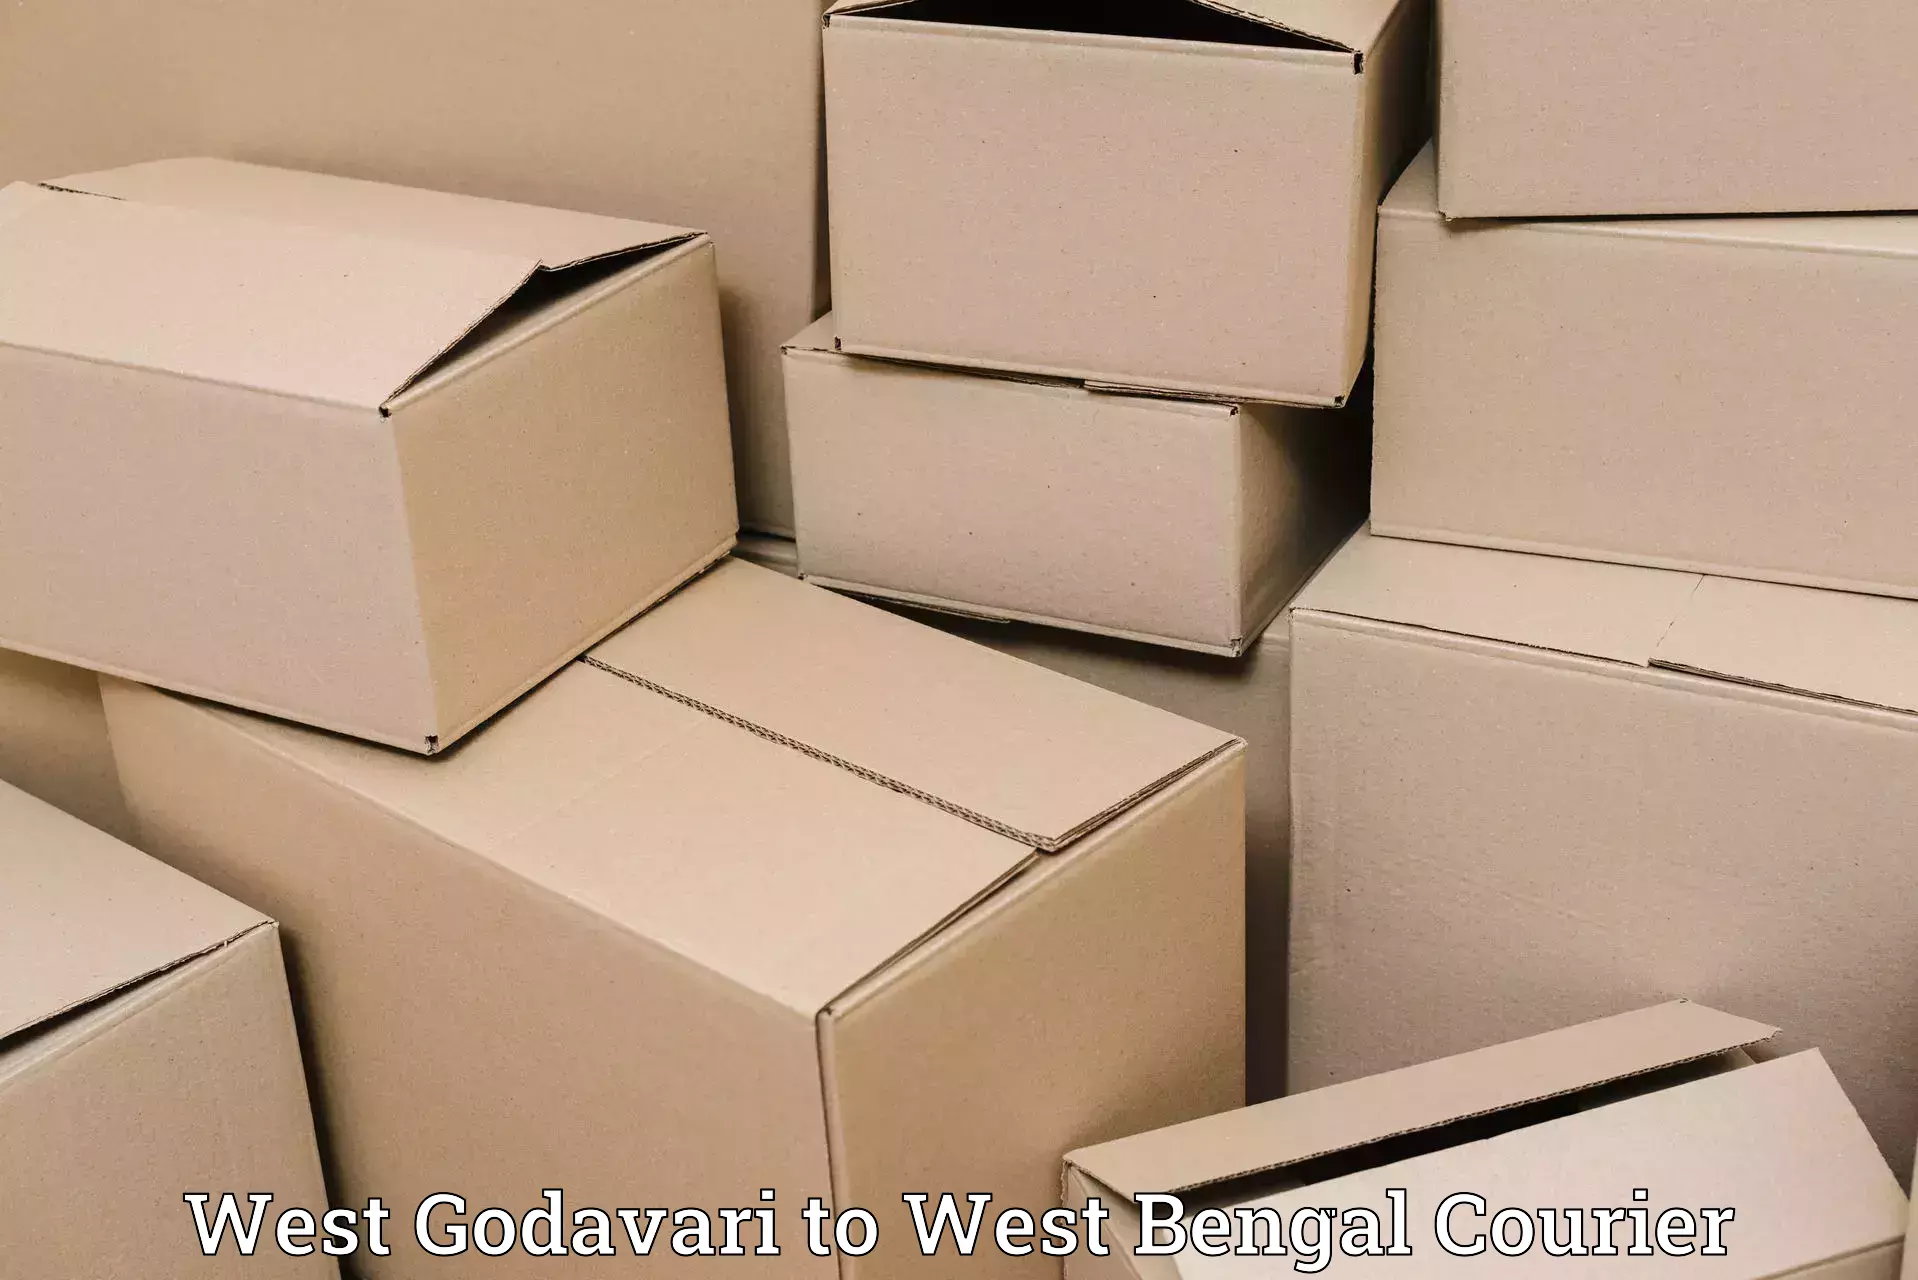 Luggage shipment processing West Godavari to West Bengal